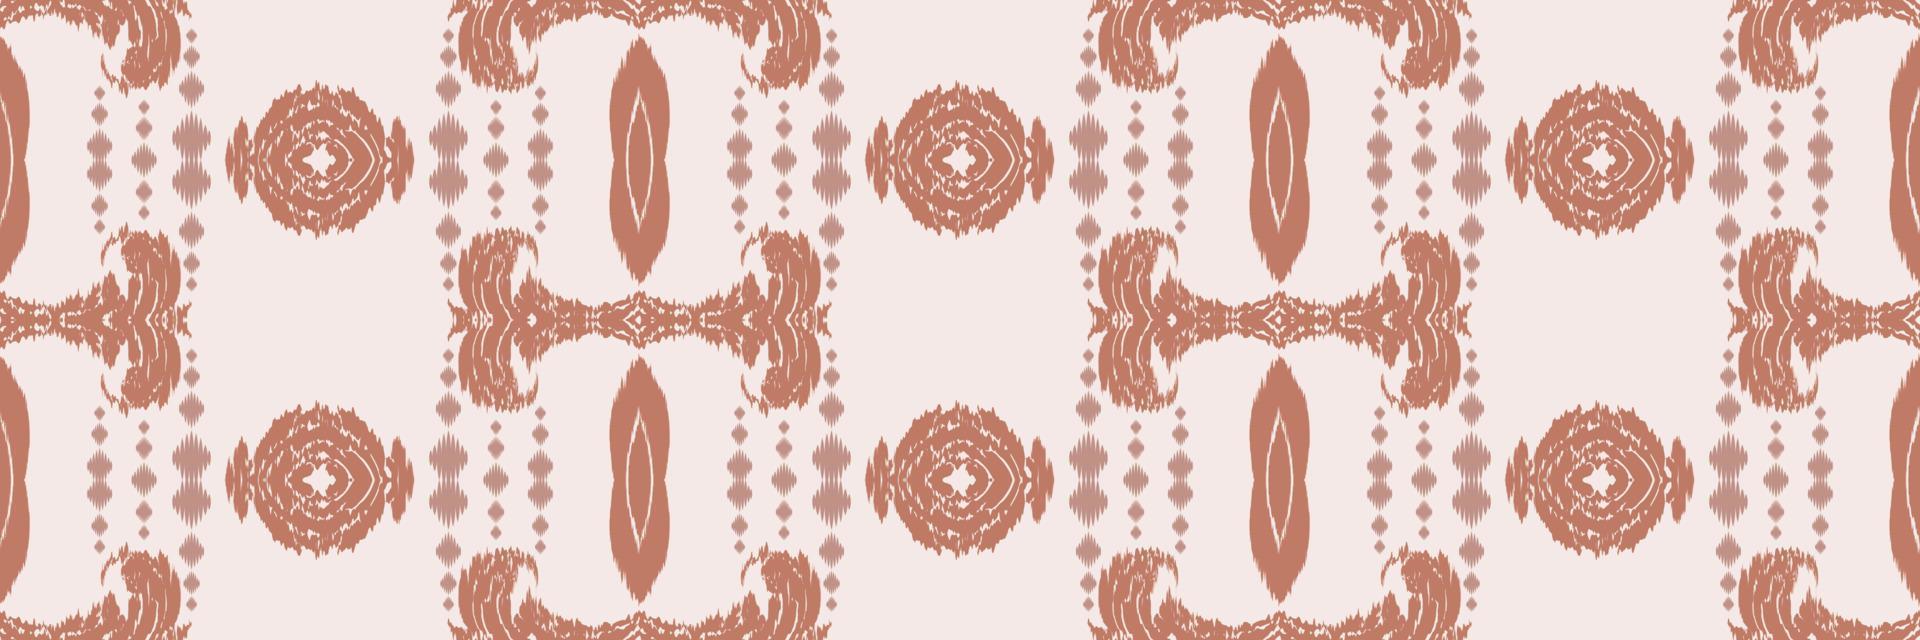 batik tessile motivo ikat tessuto senza soluzione di continuità modello digitale vettore design per Stampa saree Kurti Borneo tessuto confine spazzola simboli campioni elegante